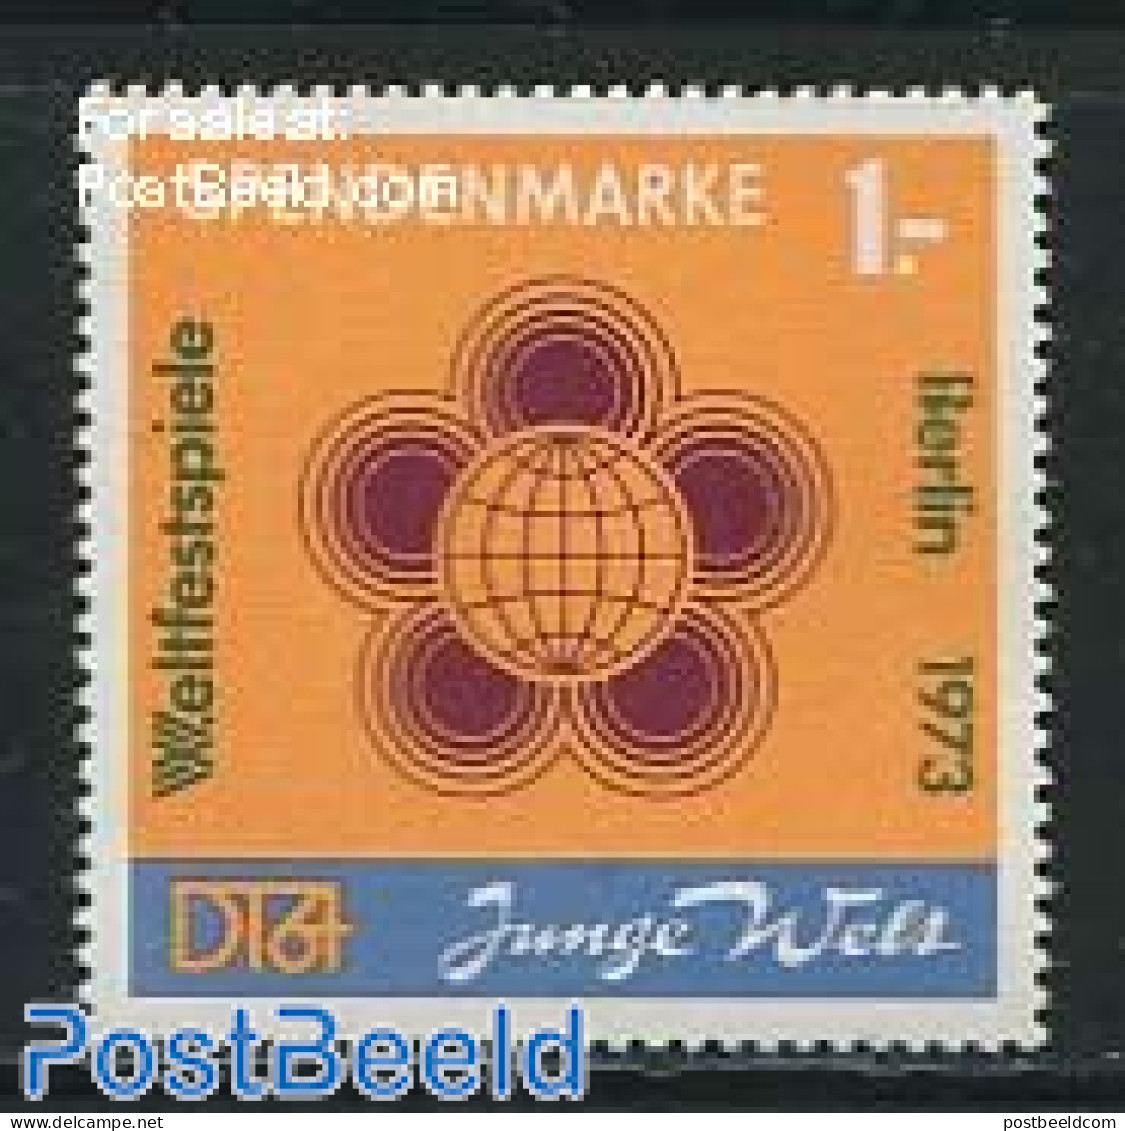 Germany, DDR 1972 Spendenmarke 1v (orange), Mint NH - Nuevos